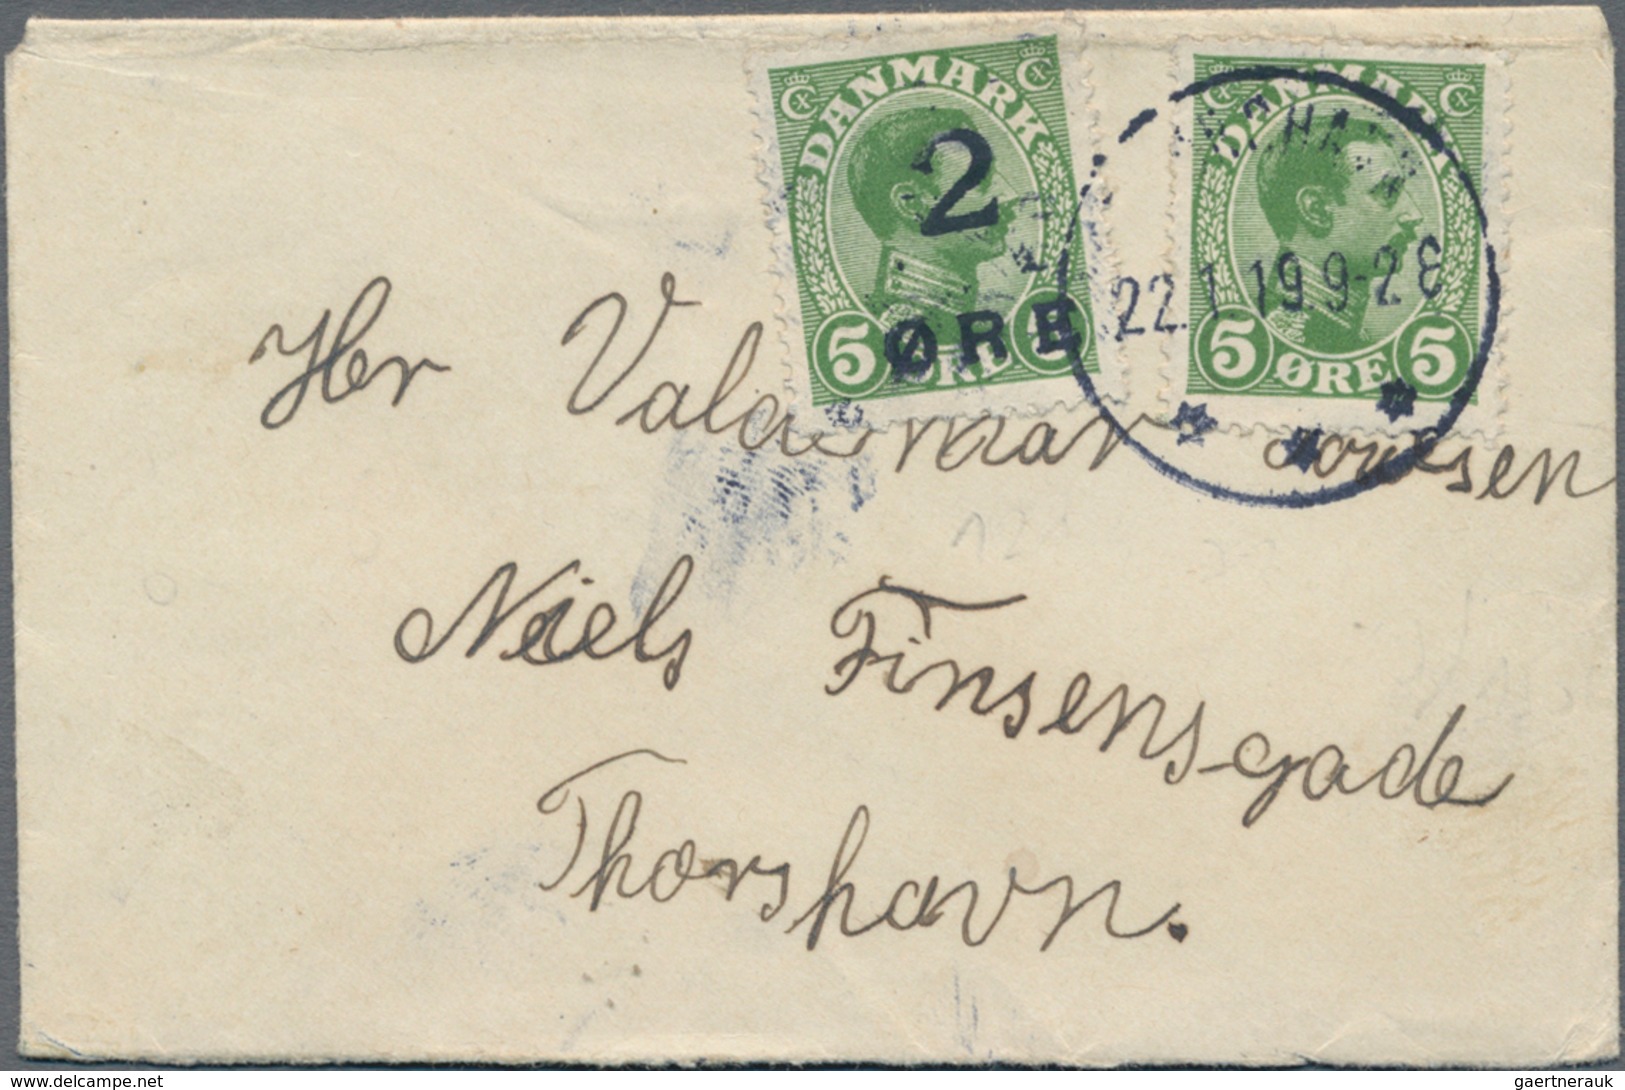 Dänemark - Färöer: 1919, 2ö. On 5ö. Green In Combination With Denmark 5ö. Green, Attractive Franking - Faroe Islands